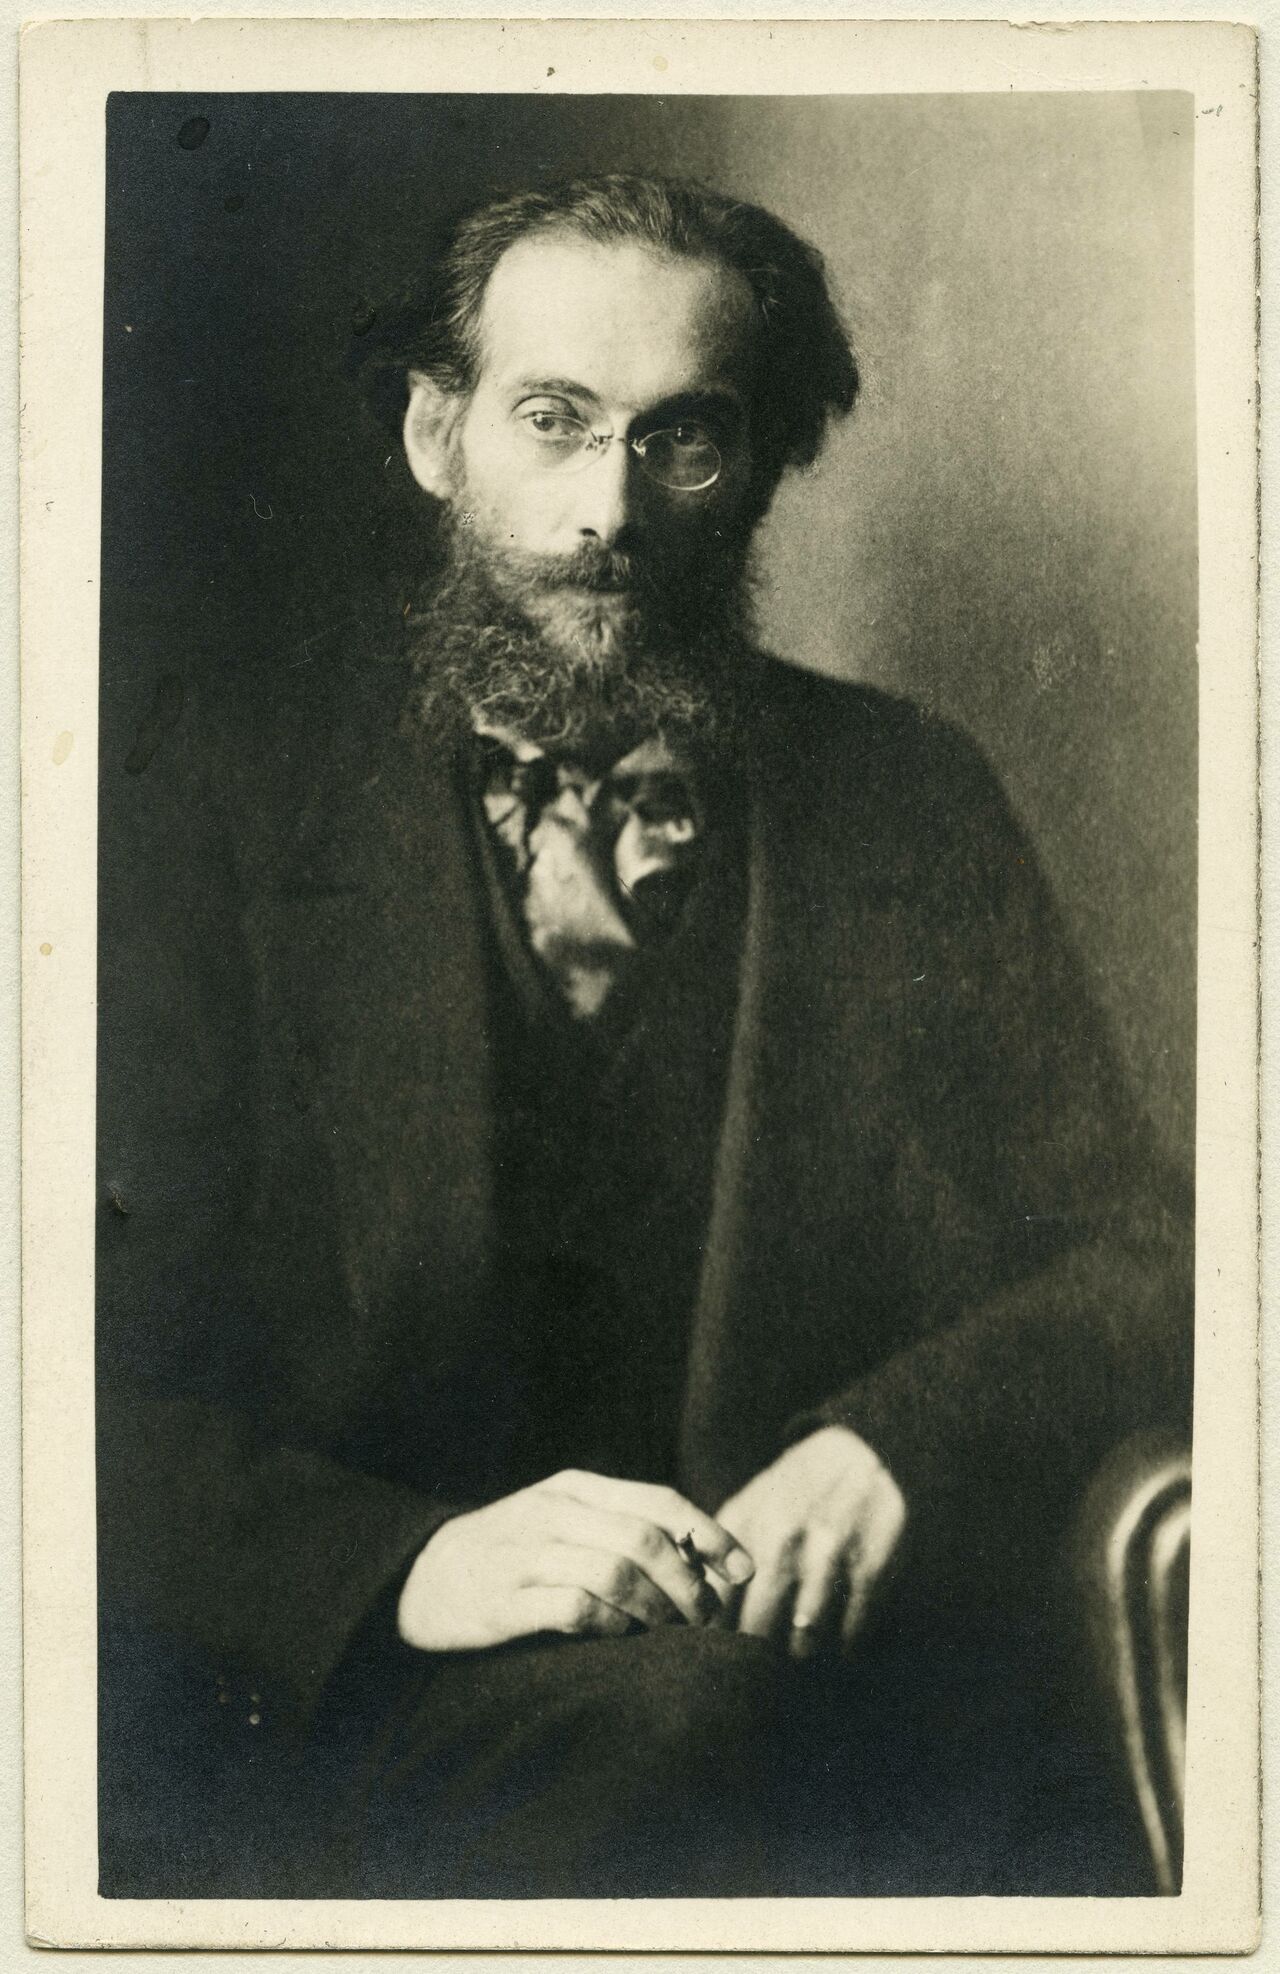 Gustav Landauer (1870-1919), Volksbeauftragte für Volksaufklärung in der ersten Räterepublik, Postkarte / Fotografie, November 1918